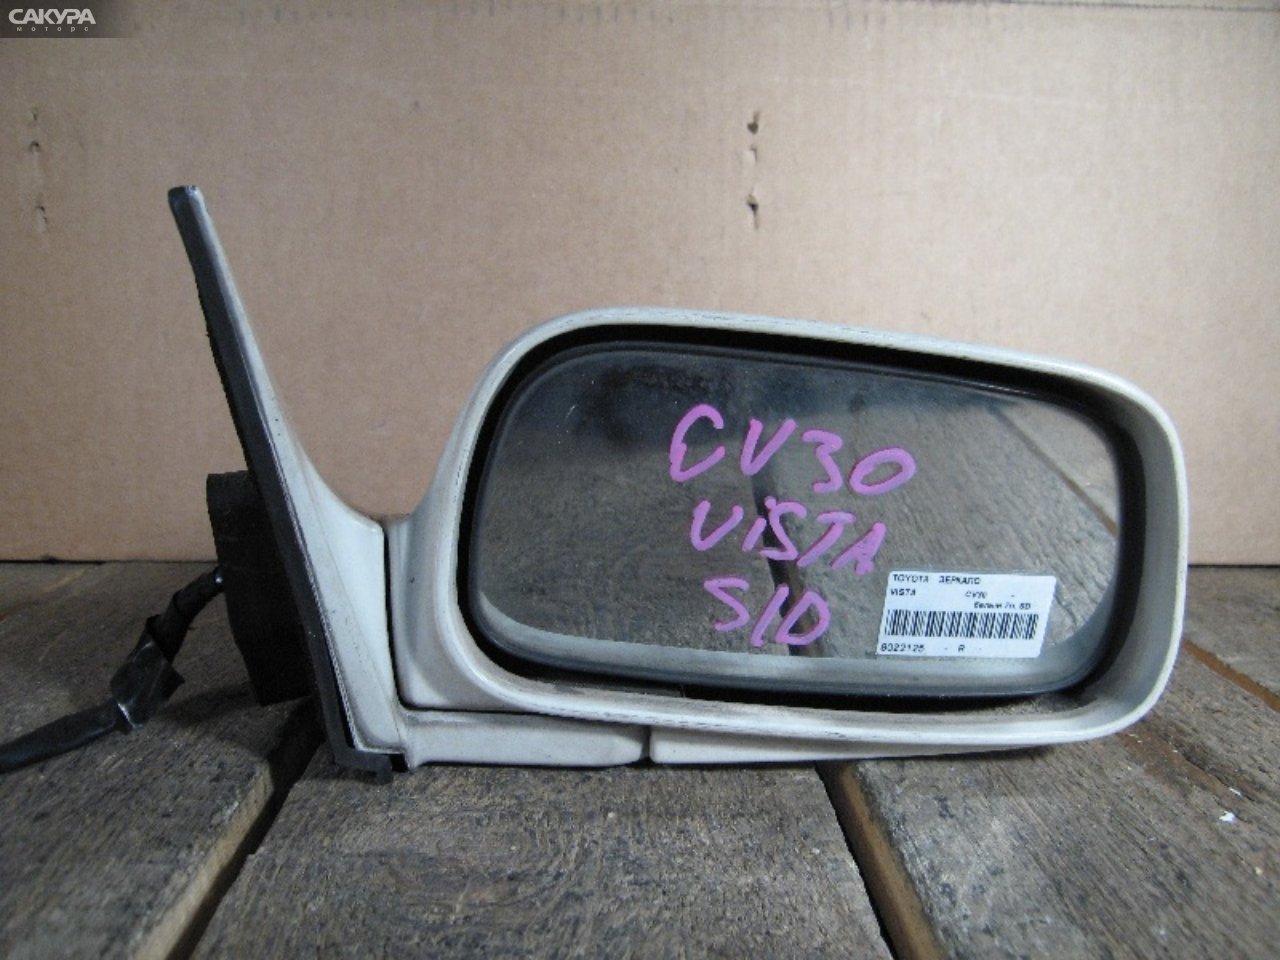 Зеркало боковое правое Toyota Vista CV30: купить в Сакура Абакан.